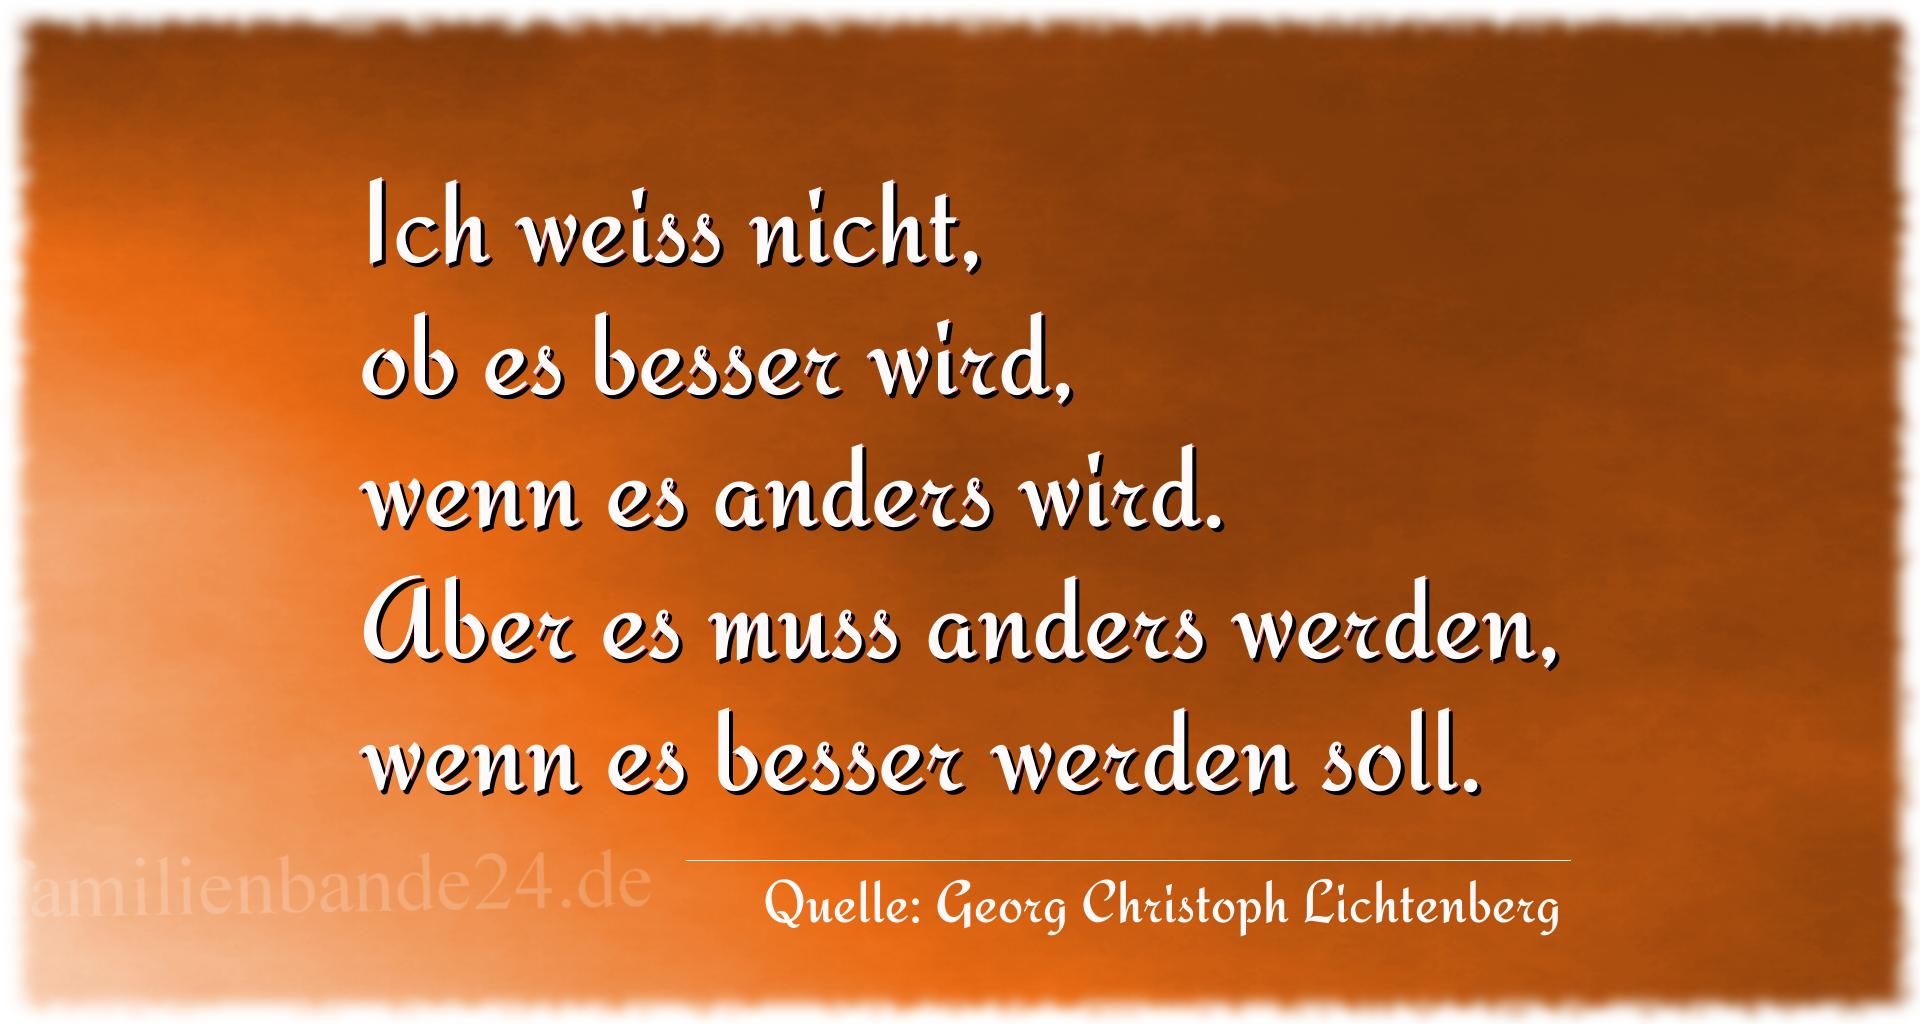 Aphorismus Nr. 1281 (von Georg Christoph Lichtenberg): "Ich weiss nicht, ob es besser wird, wenn es anders wird.  [...]